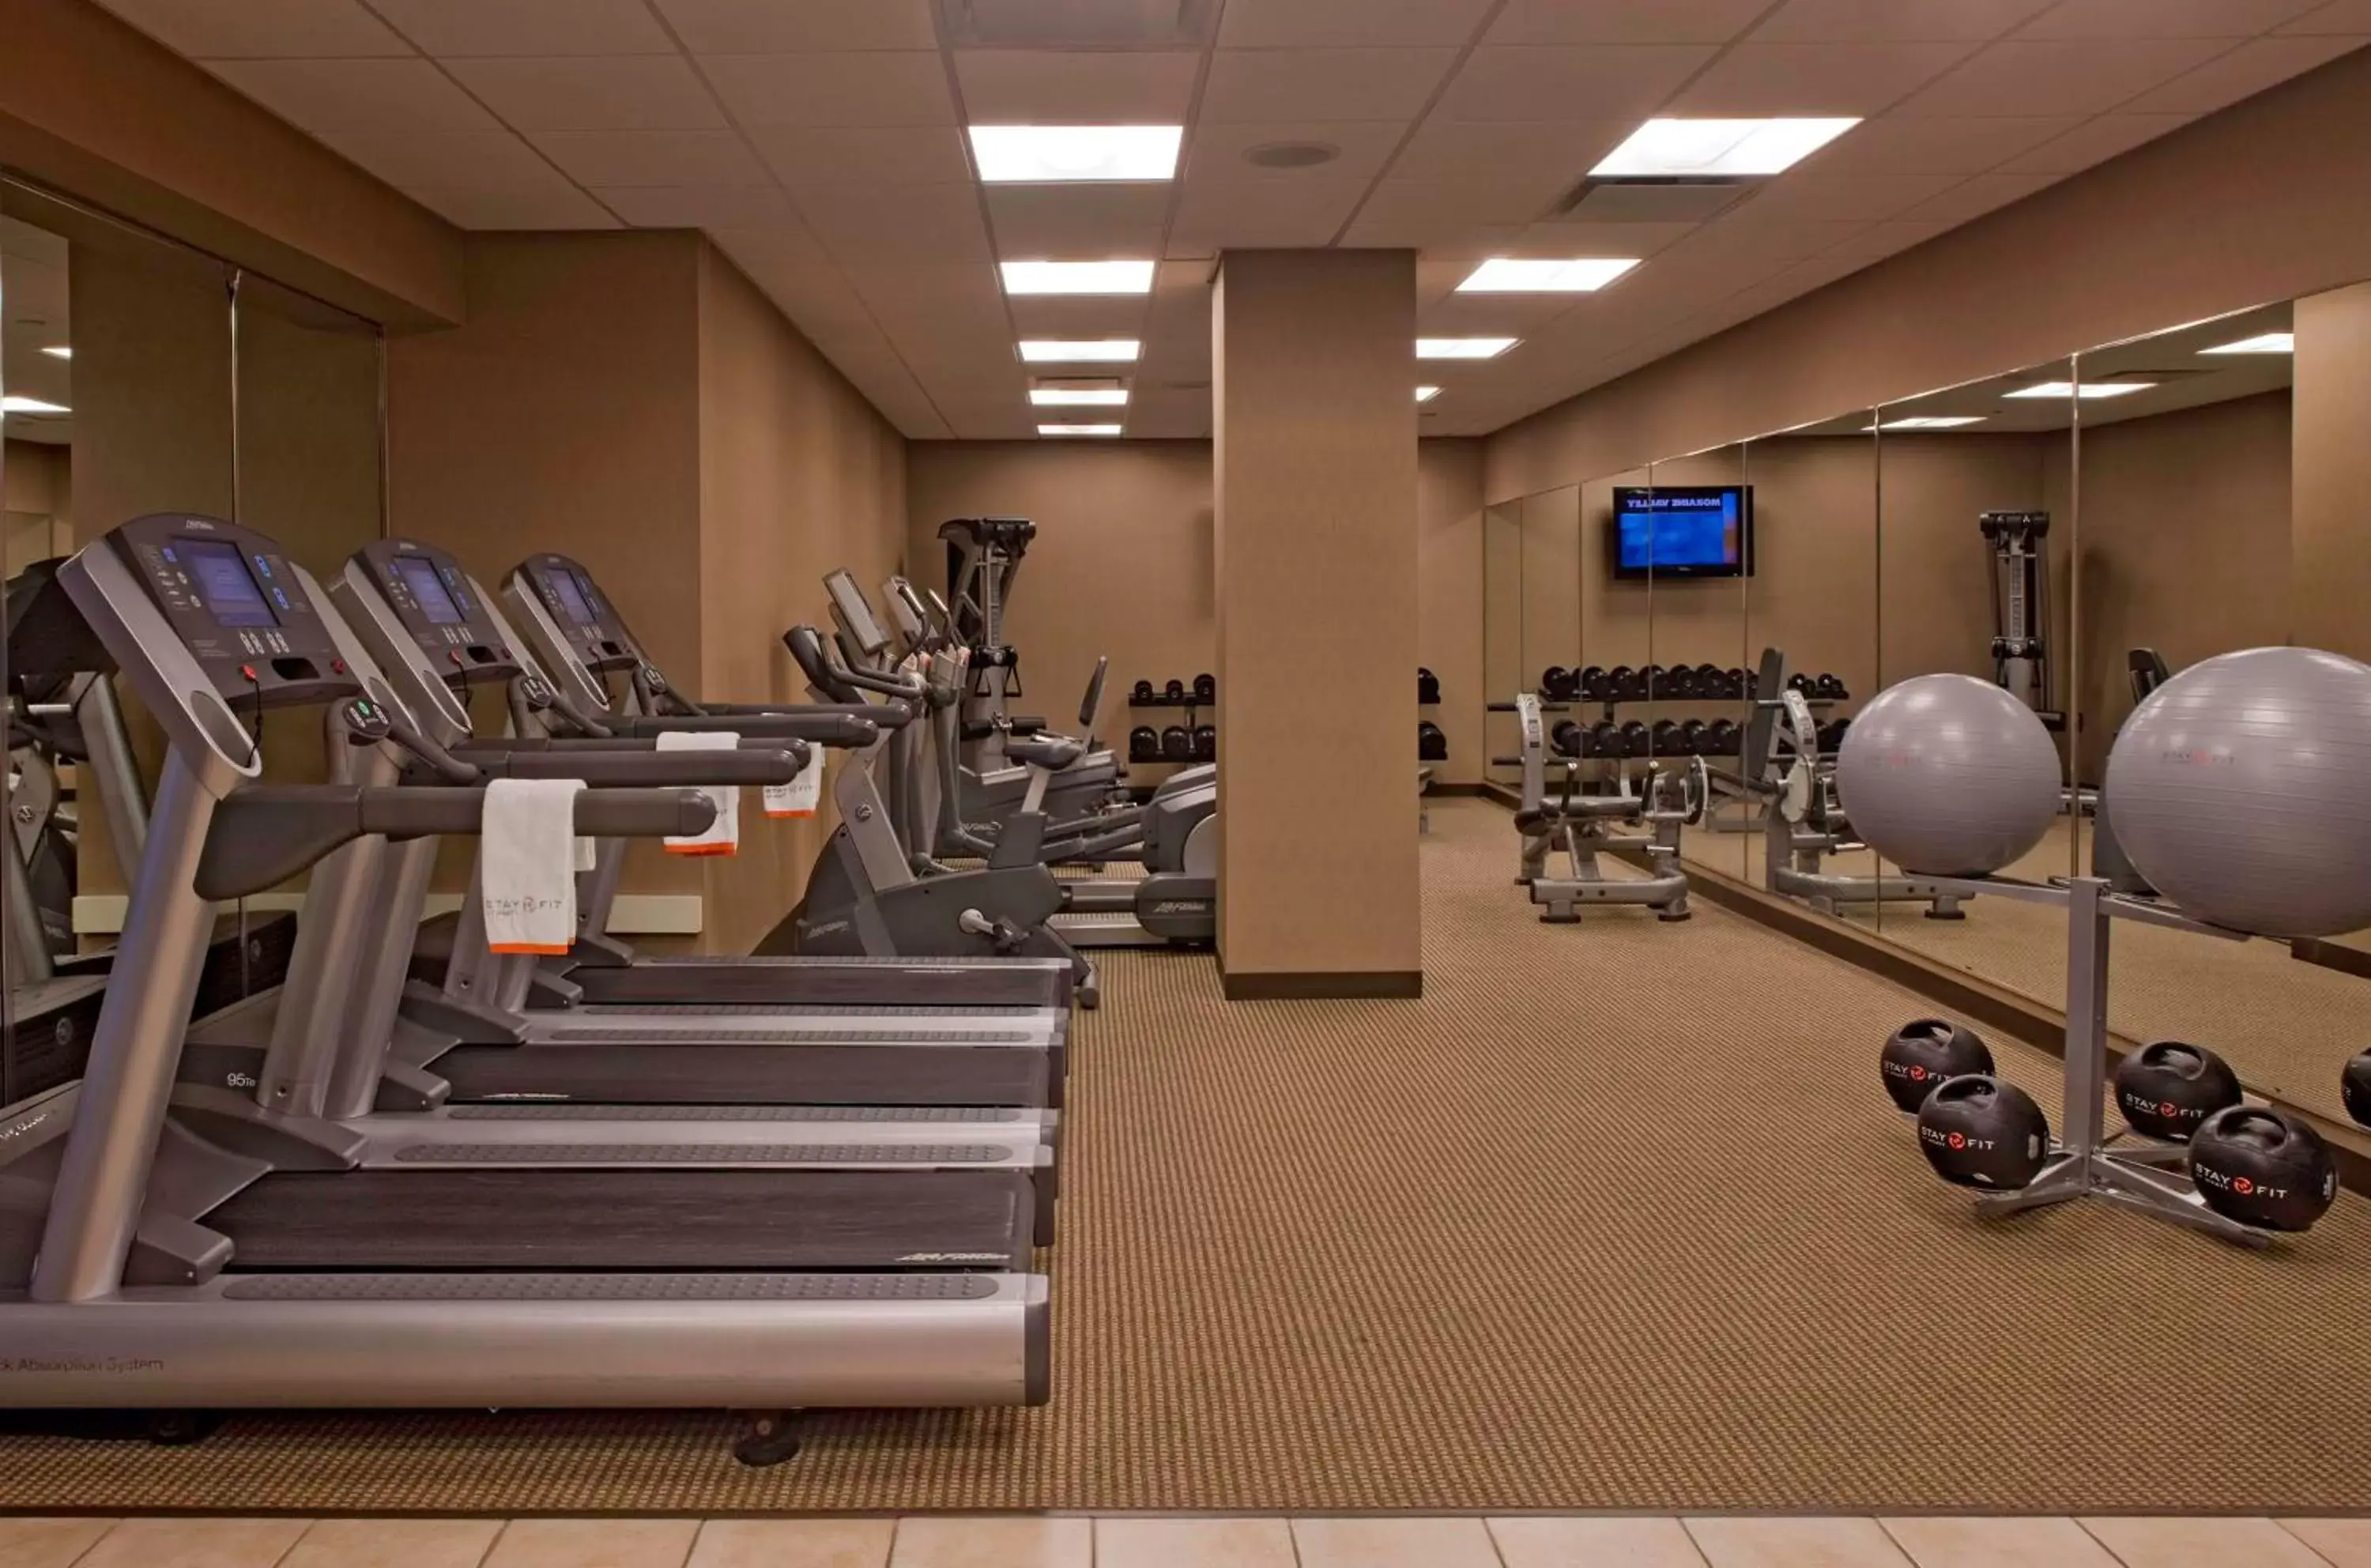 Fitness centre/facilities, Fitness Center/Facilities in Hyatt Regency Lisle near Naperville